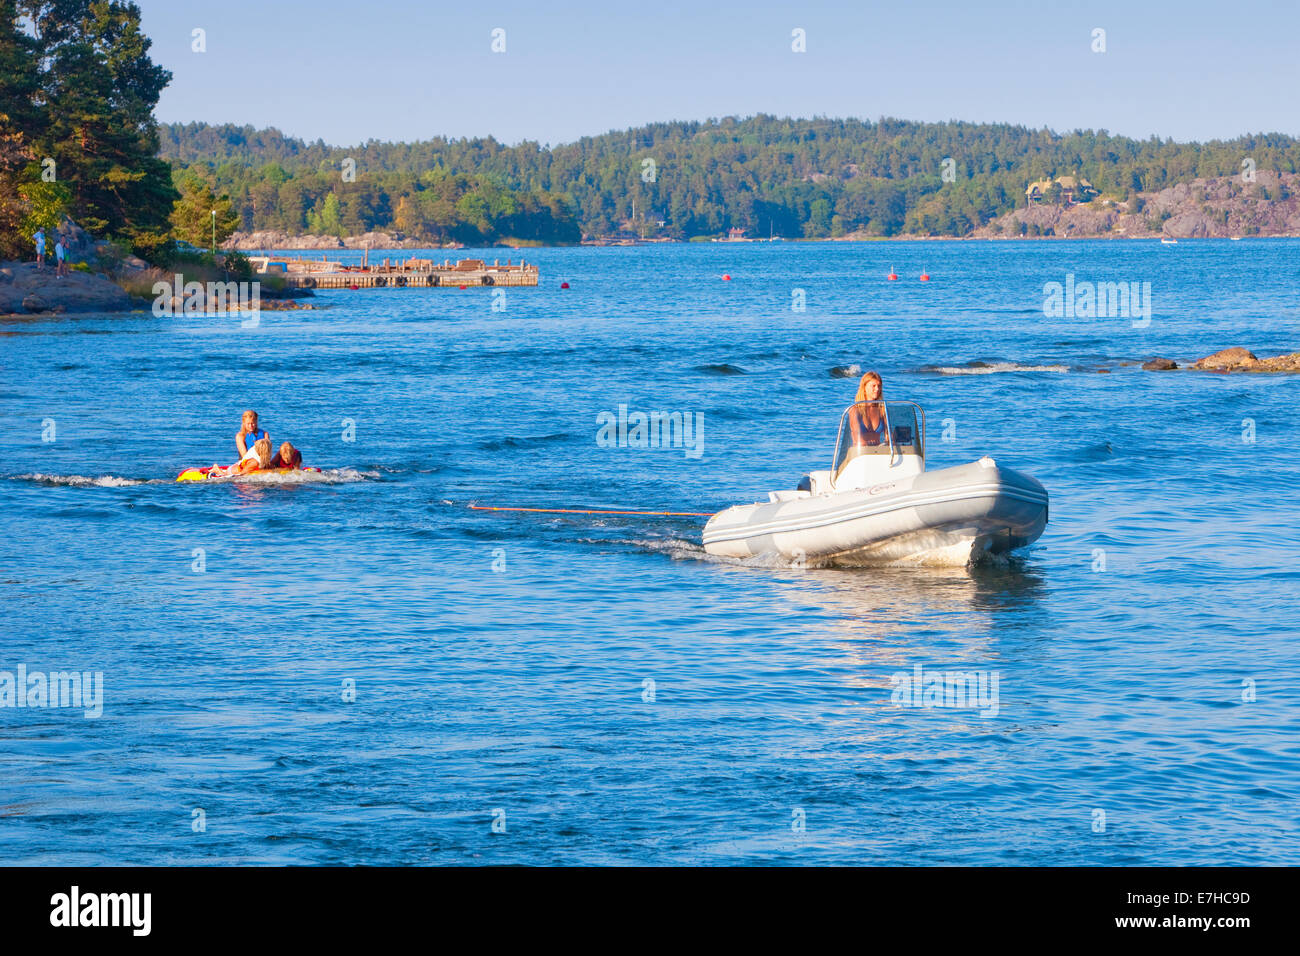 Suecia, Estocolmo - Madre en lancha tirando niños rubberboat. Foto de stock